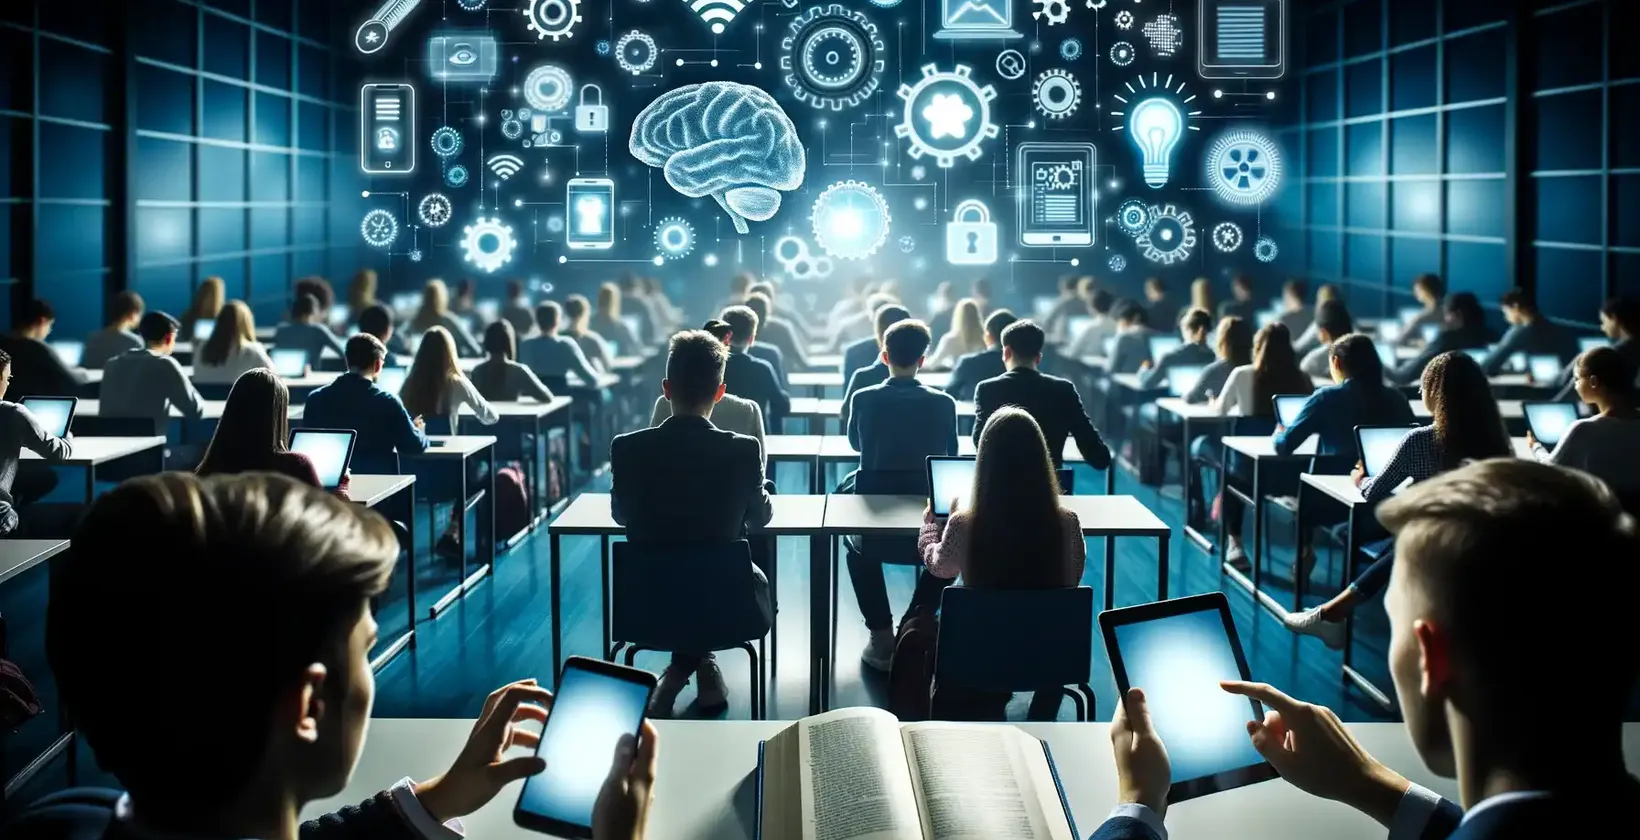 En stor gruppe studenter i en futuristisk forelesningssal, alle utstyrt med bærbare datamaskiner og nettbrett.